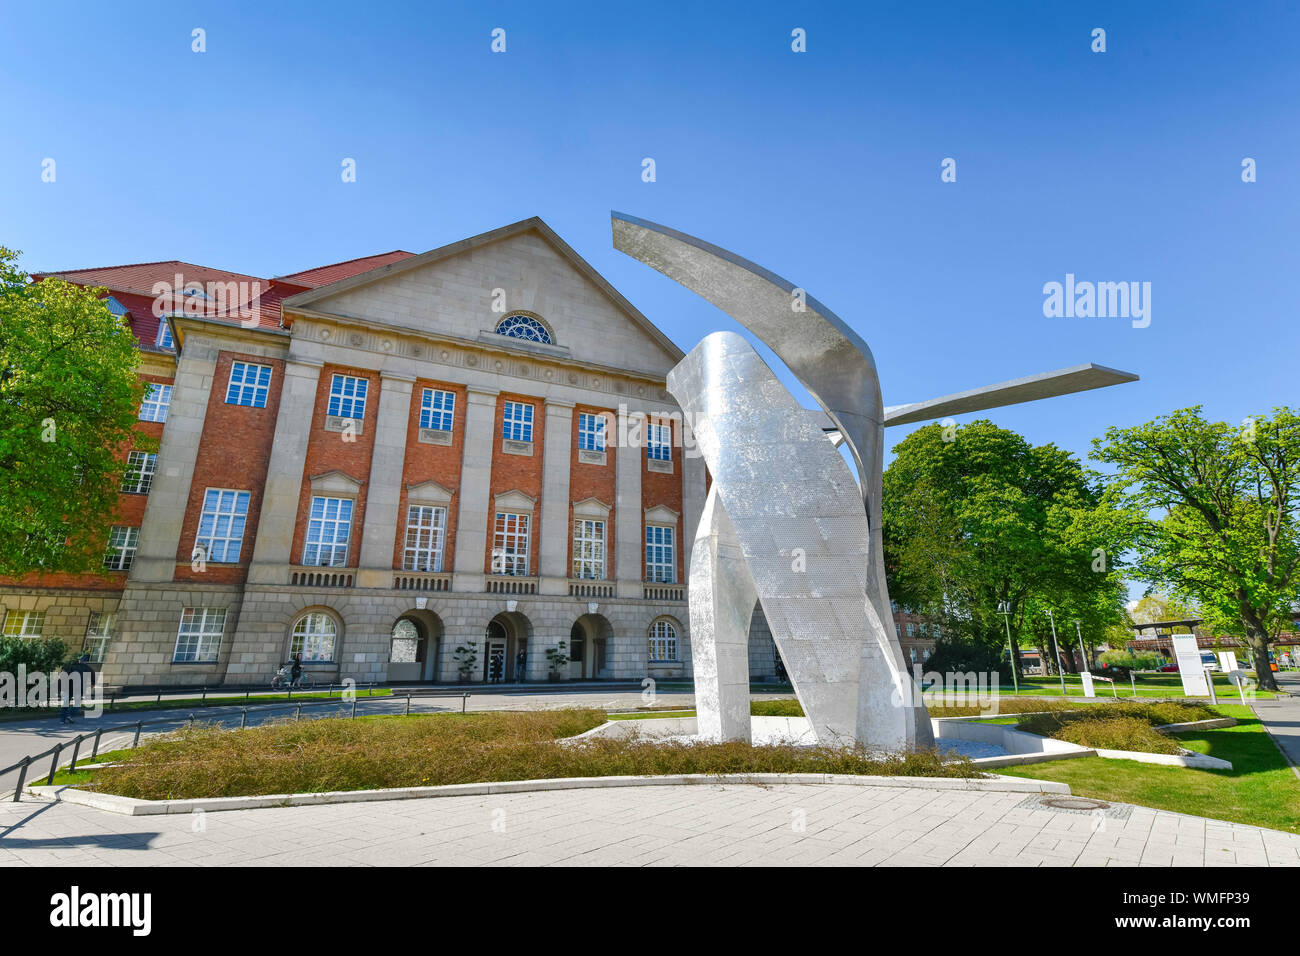 Skulptur von Daniel Libeskind, Wing, vor Siemens Verwaltungsgebaeude, Rohrdamm, Siemensstadt, Spandau, Berlin, Deutschland Stock Photo